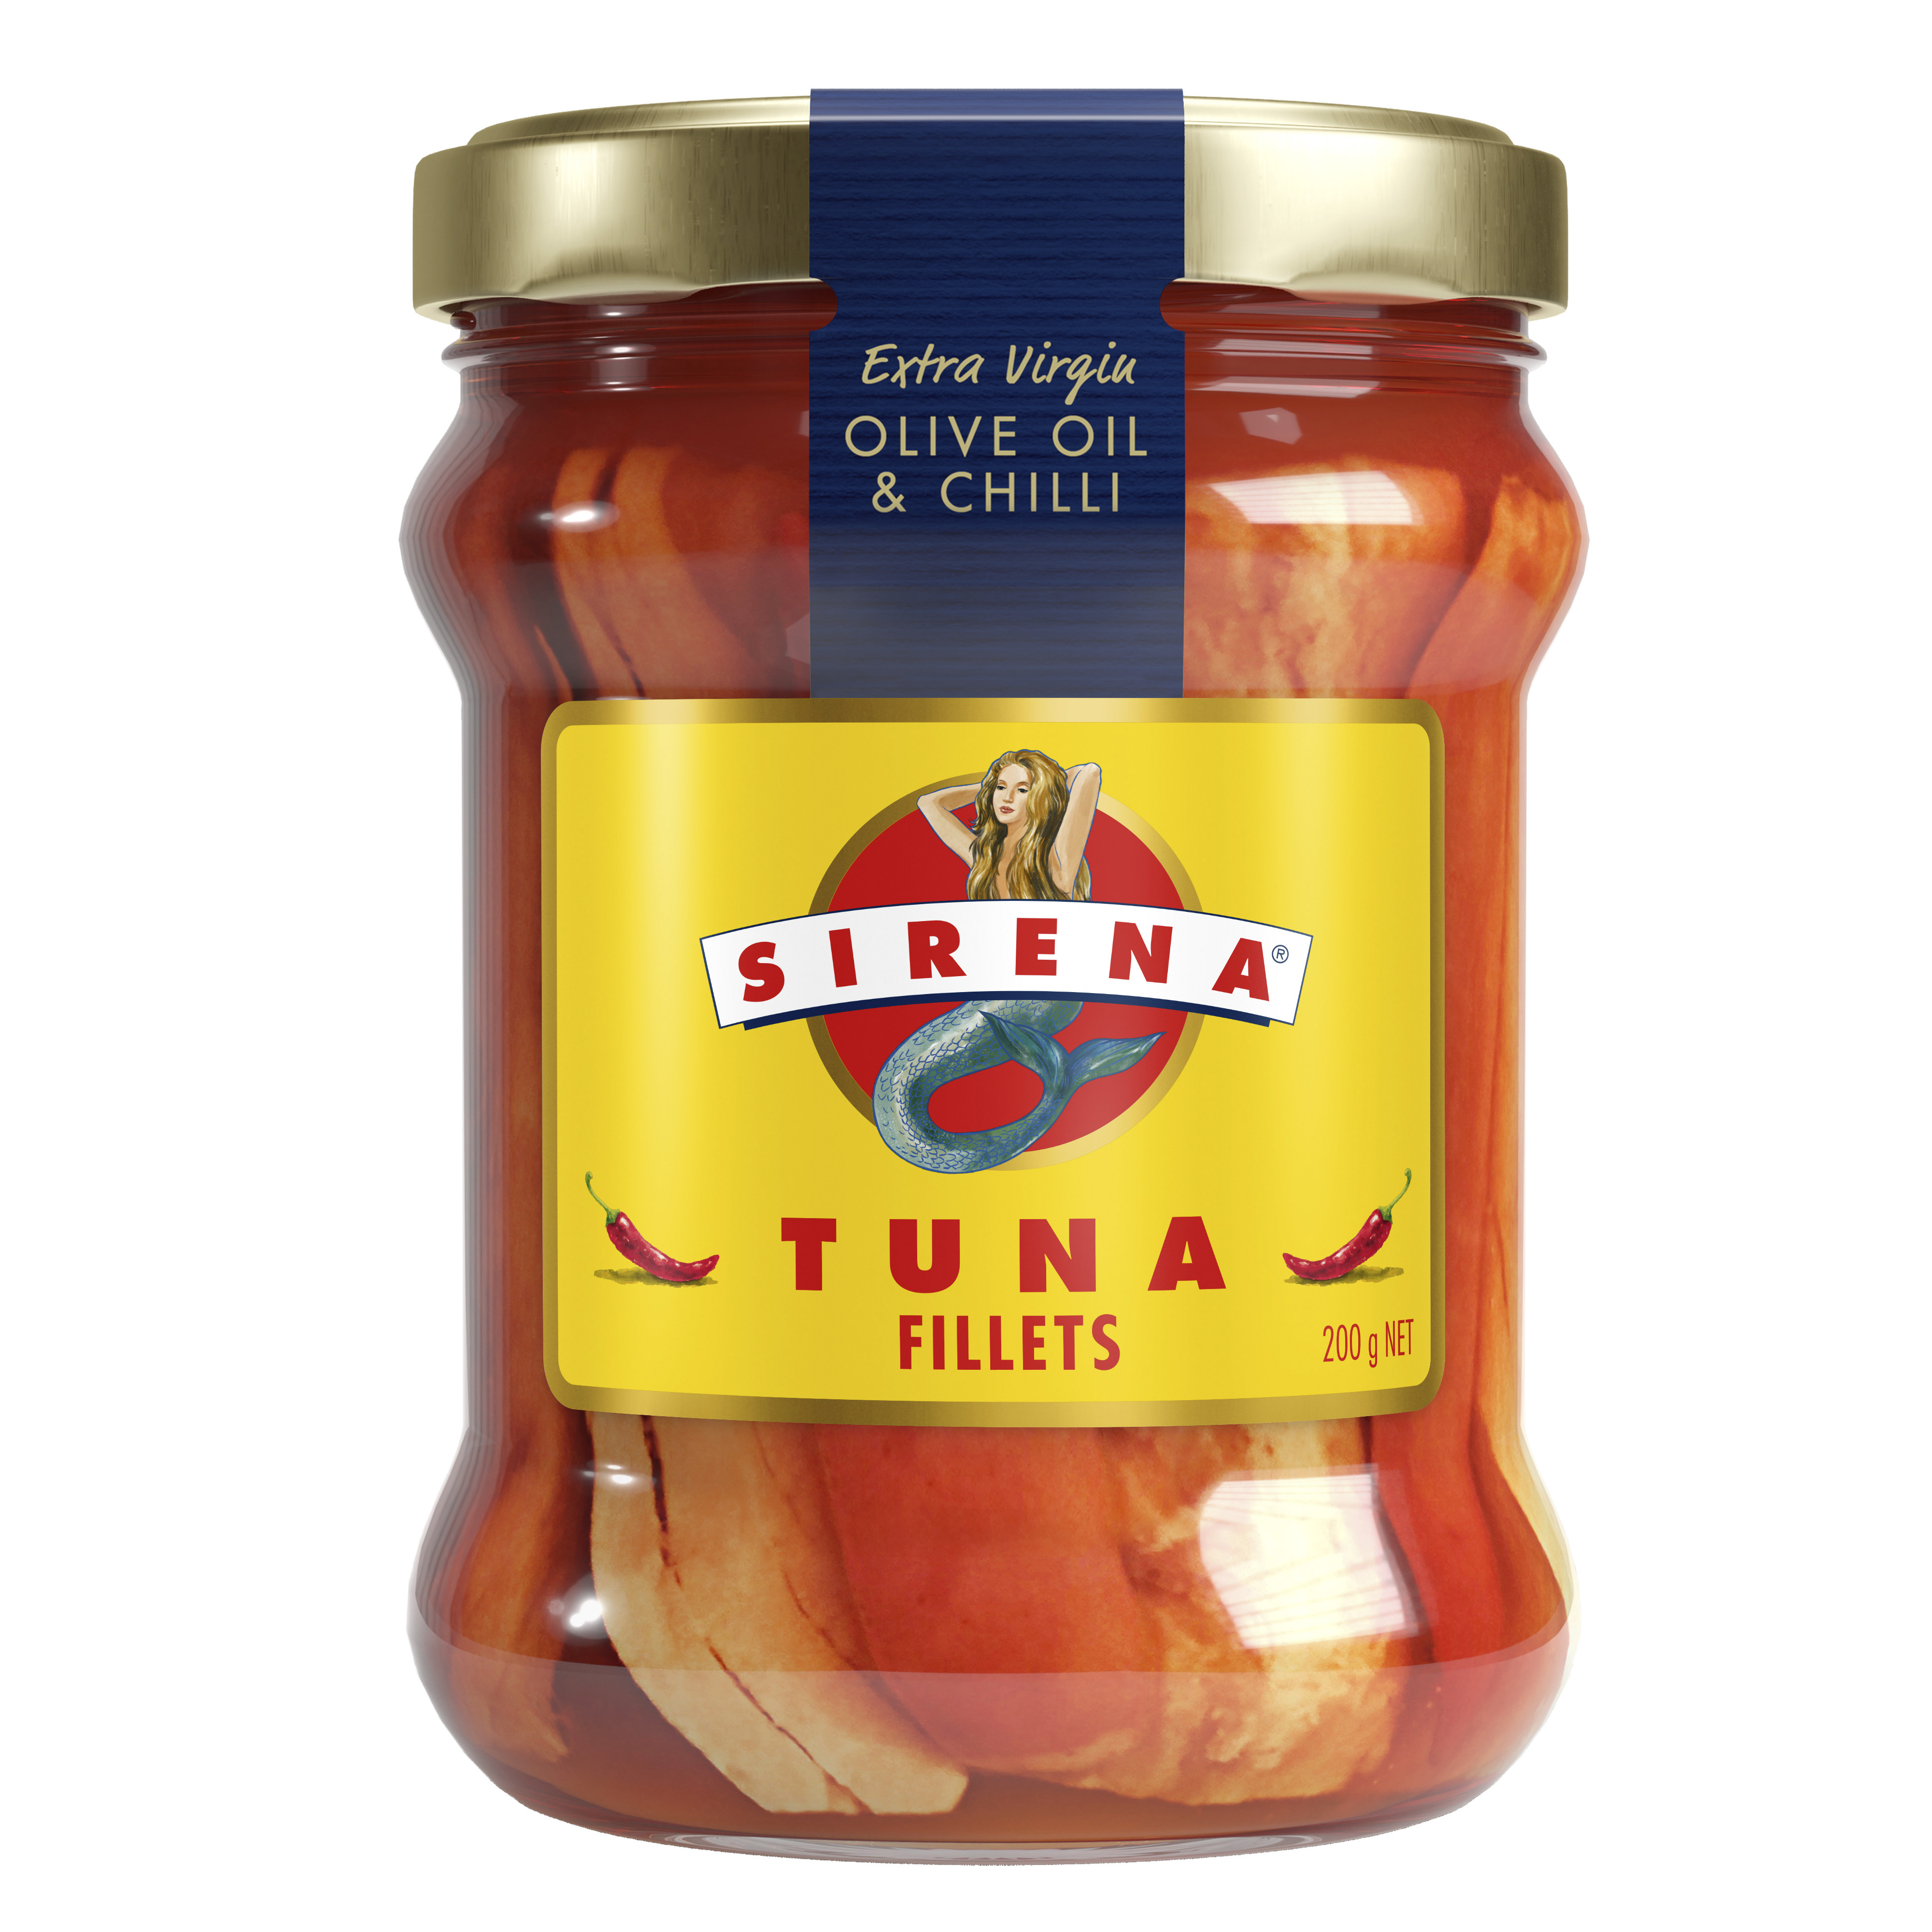 Sirena Tuna Fillets in EVOO & Chilli